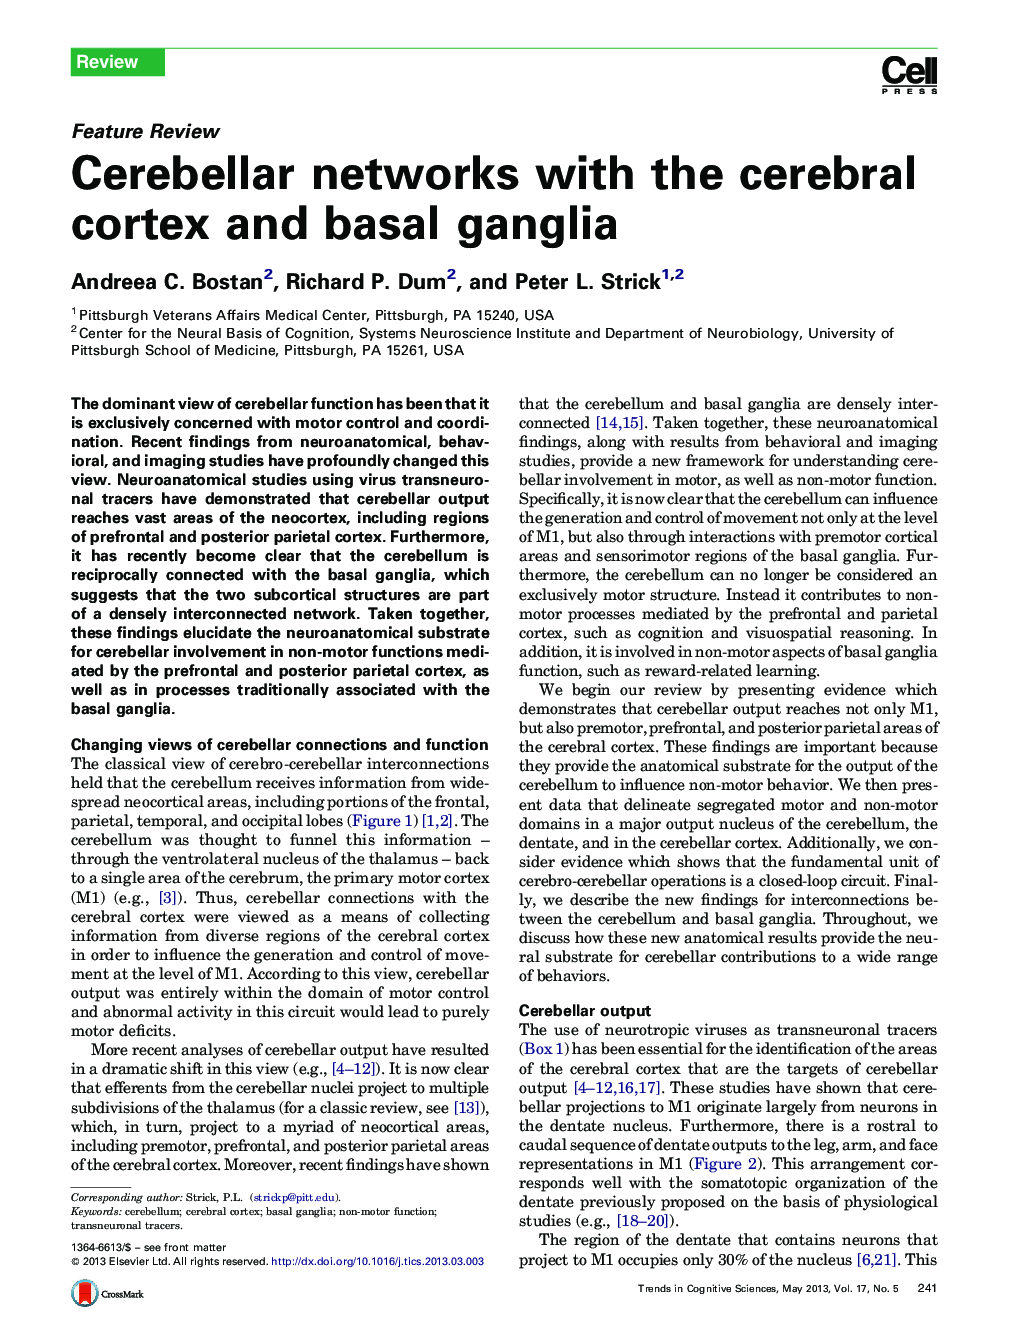 Cerebellar networks with the cerebral cortex and basal ganglia